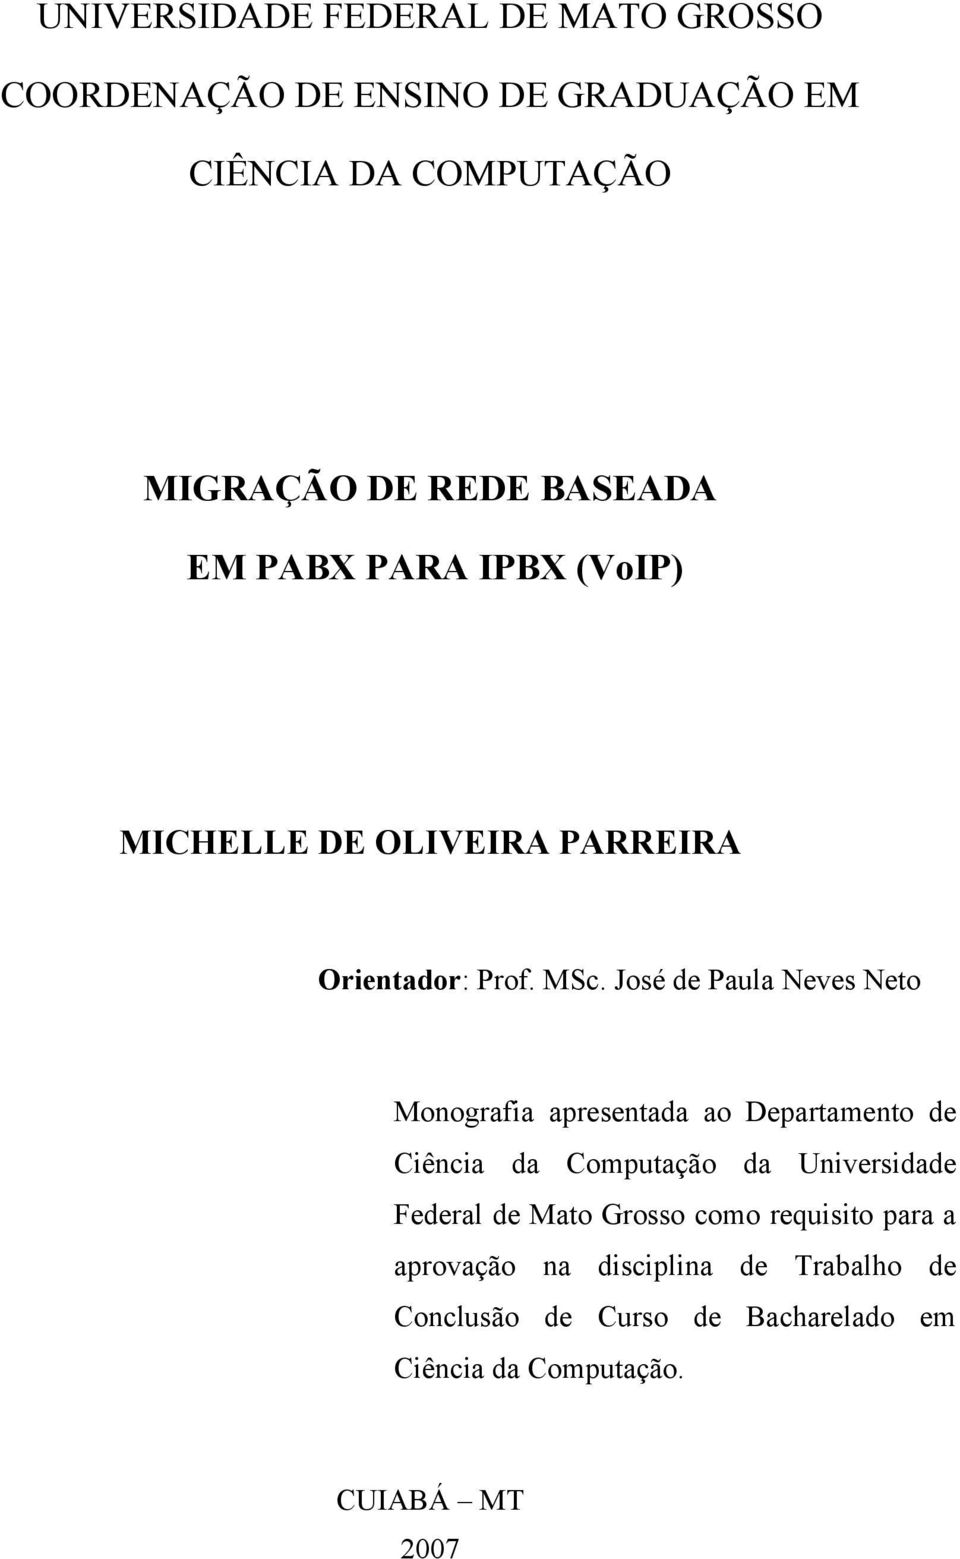 José de Paula Neves Neto Monografia apresentada ao Departamento de Ciência da Computação da Universidade Federal de